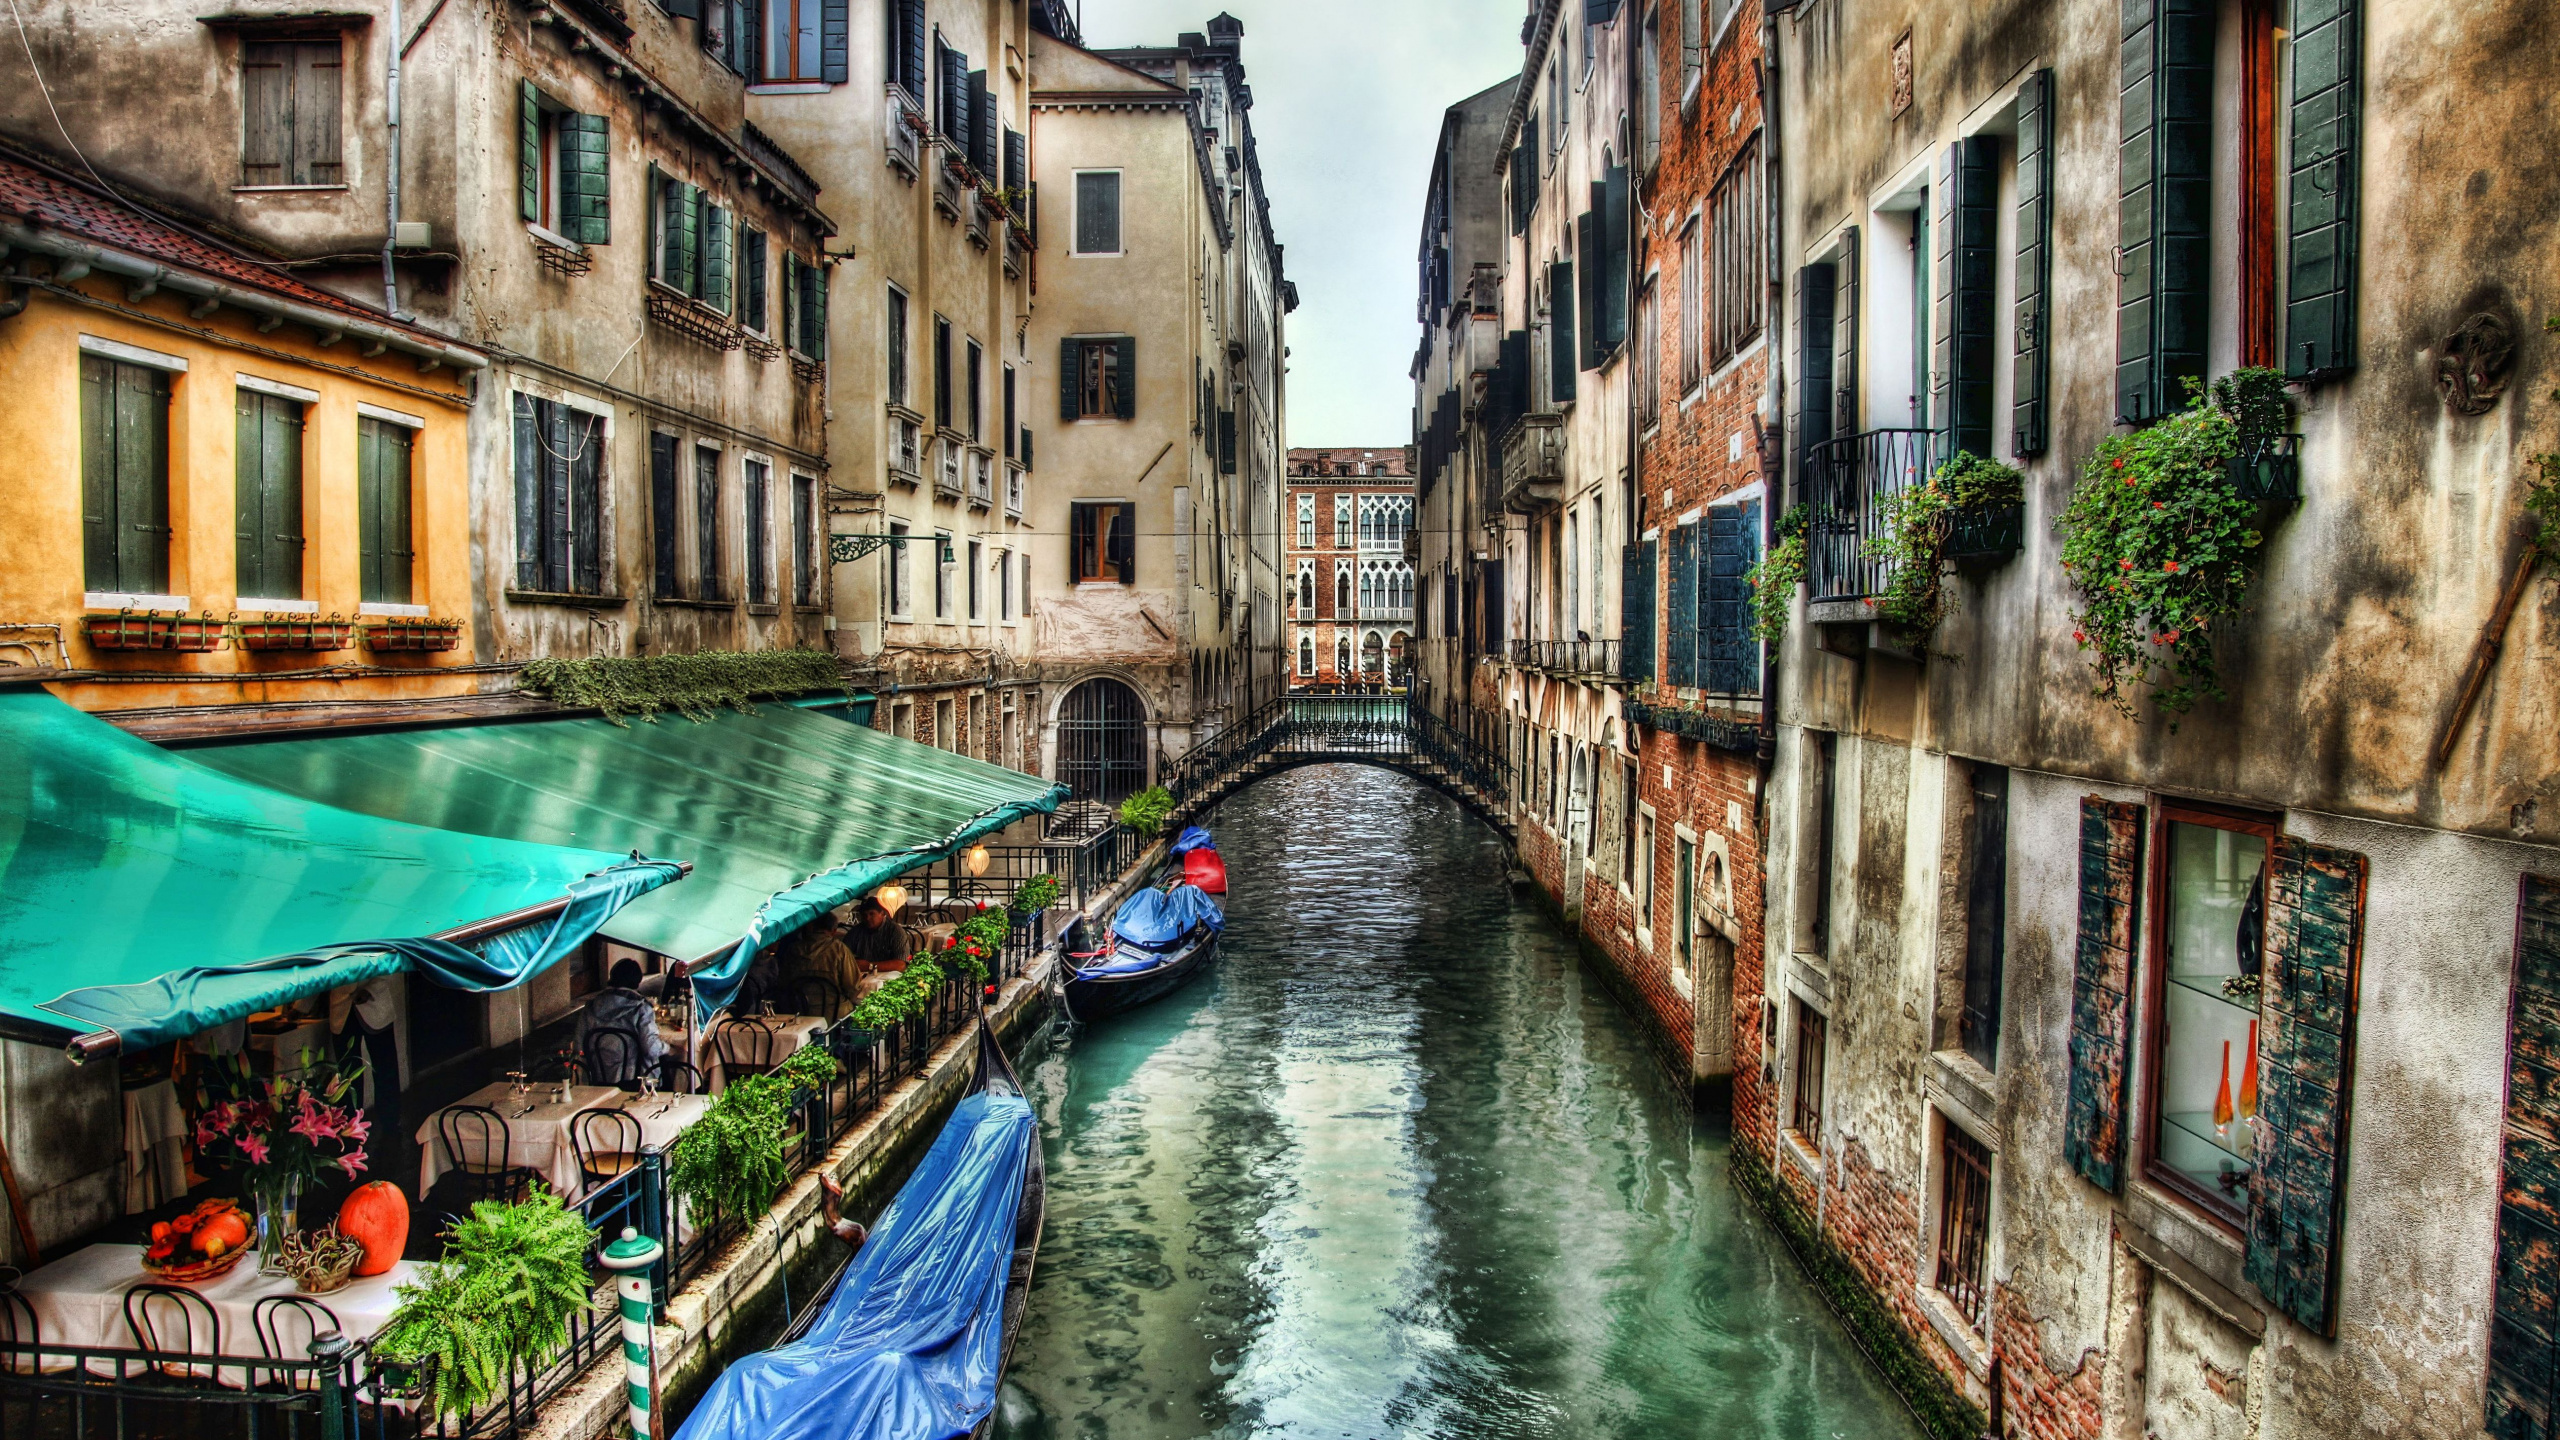 威尼斯, 运河, 滑雪缆车, 巷子里, 旅游业 壁纸 2560x1440 允许